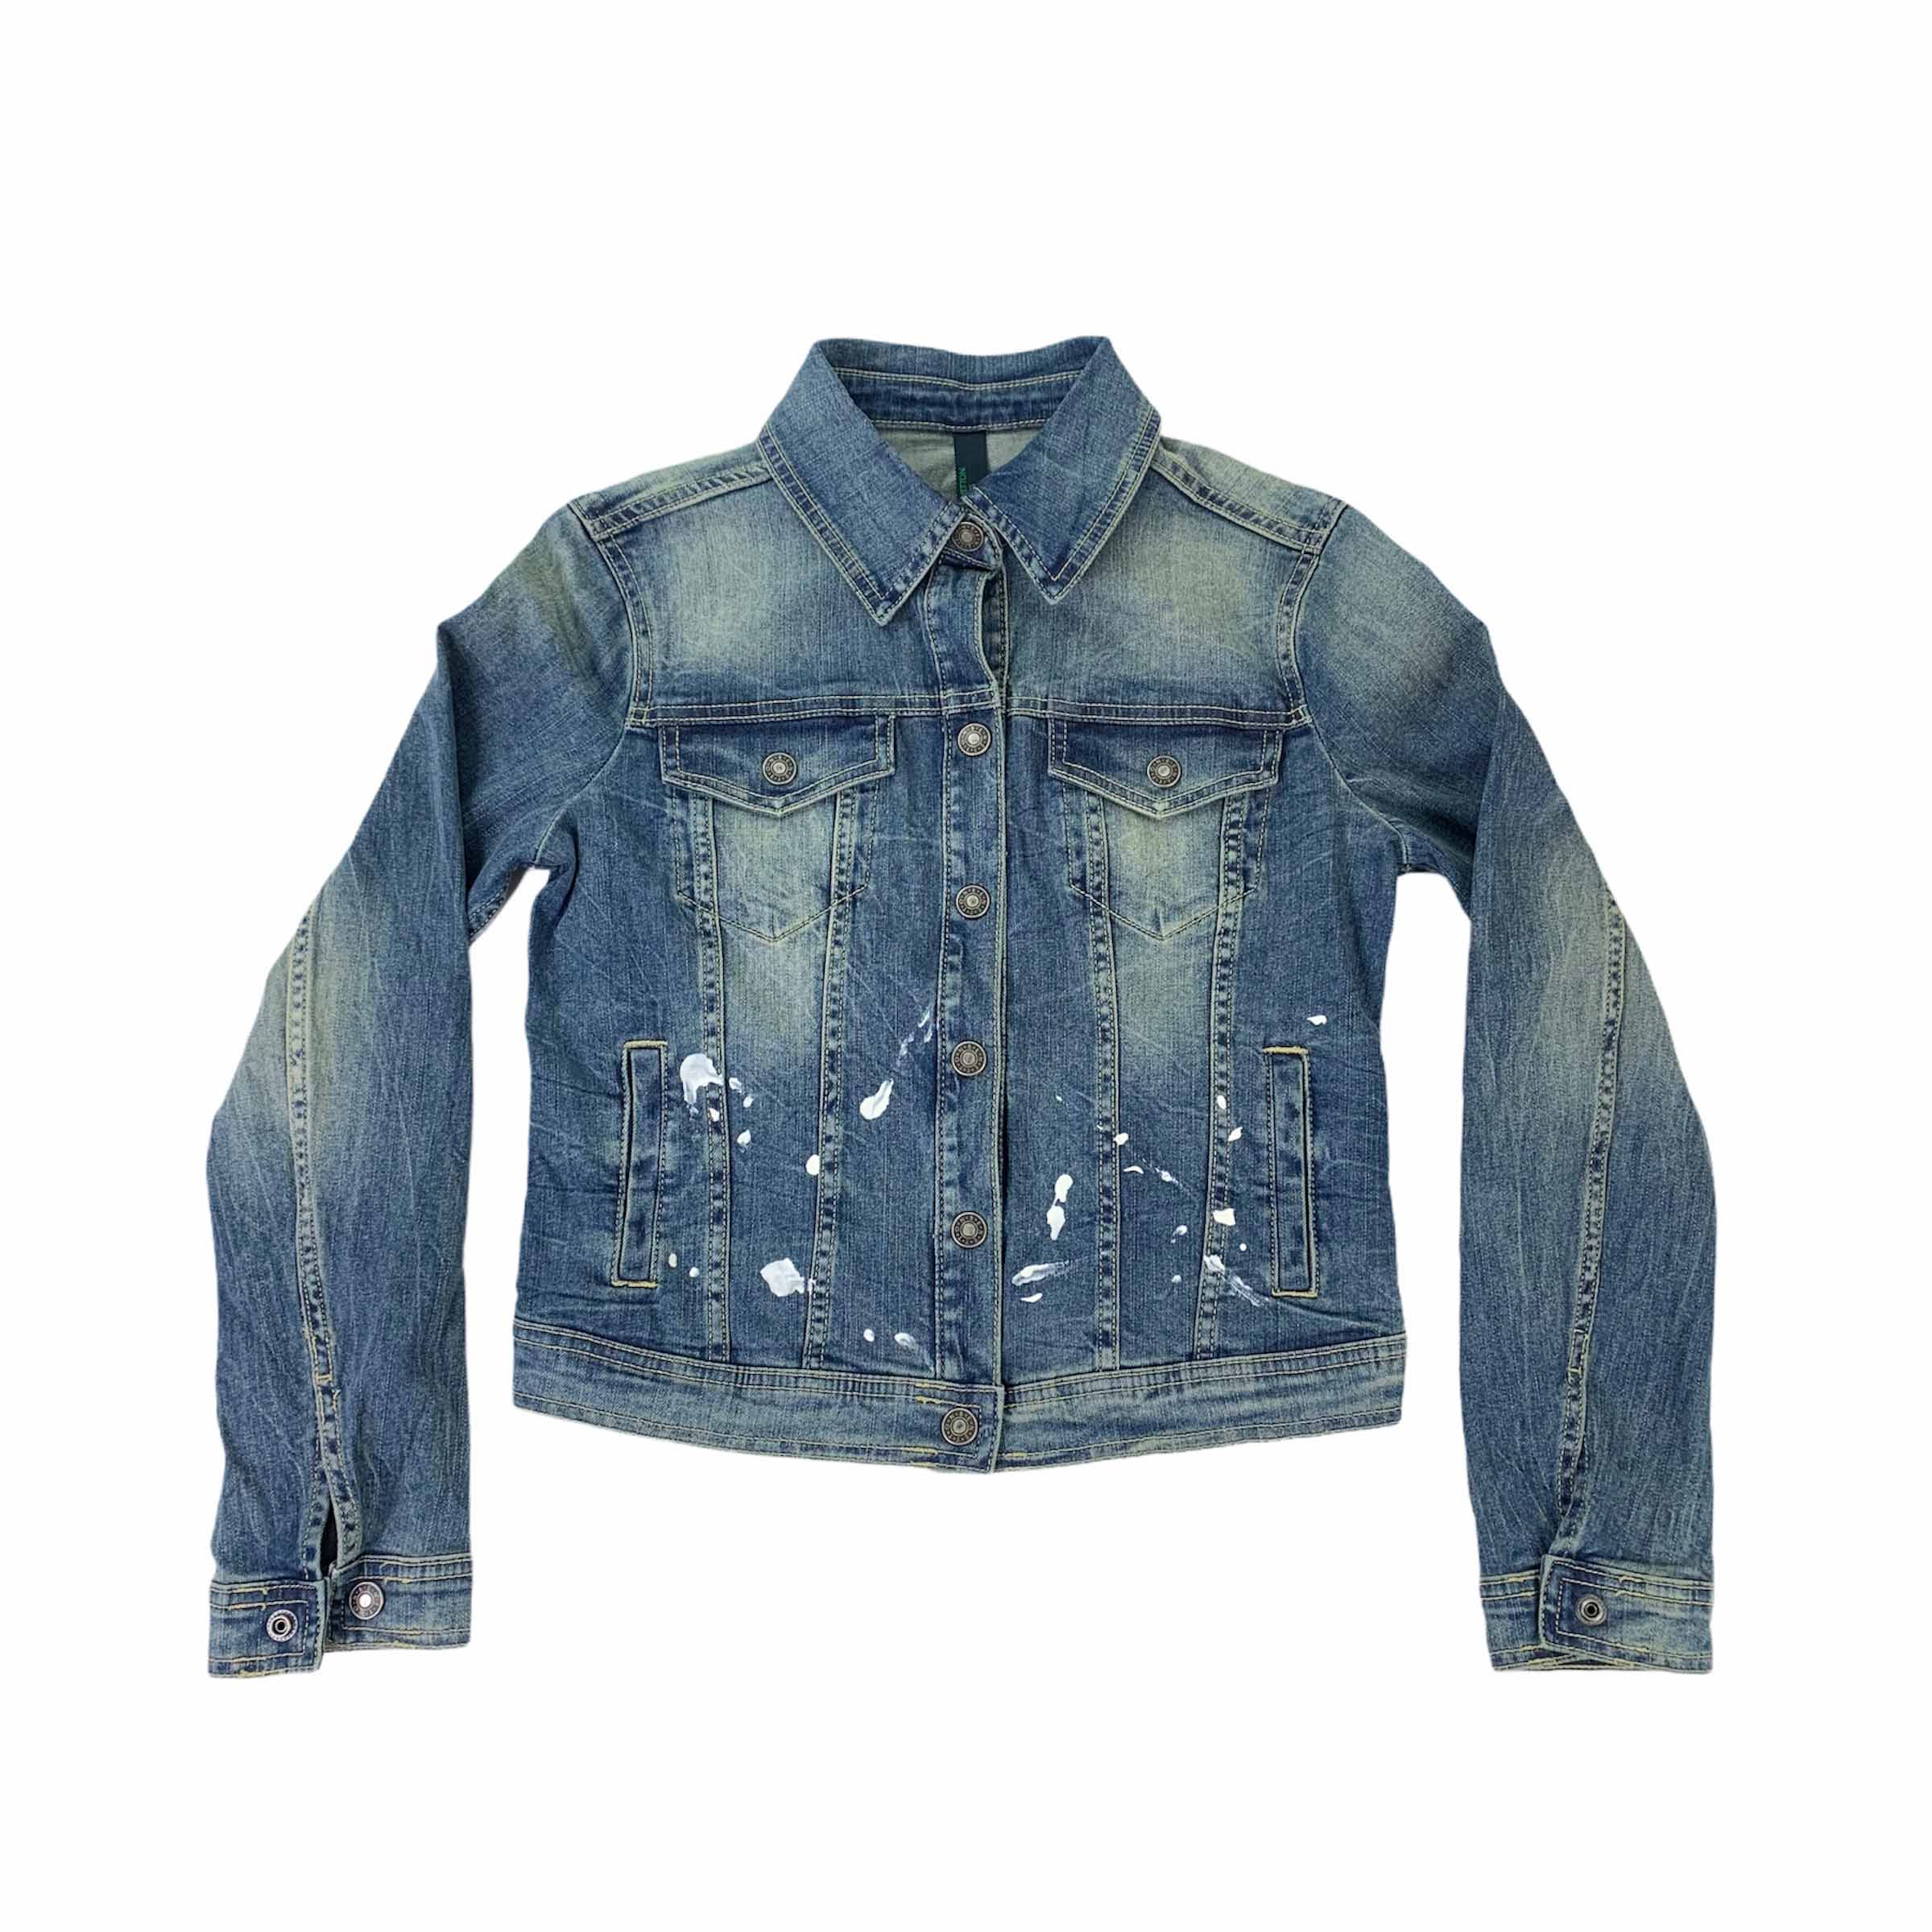 [Benetton] Denim Jacket with Paints - Size M